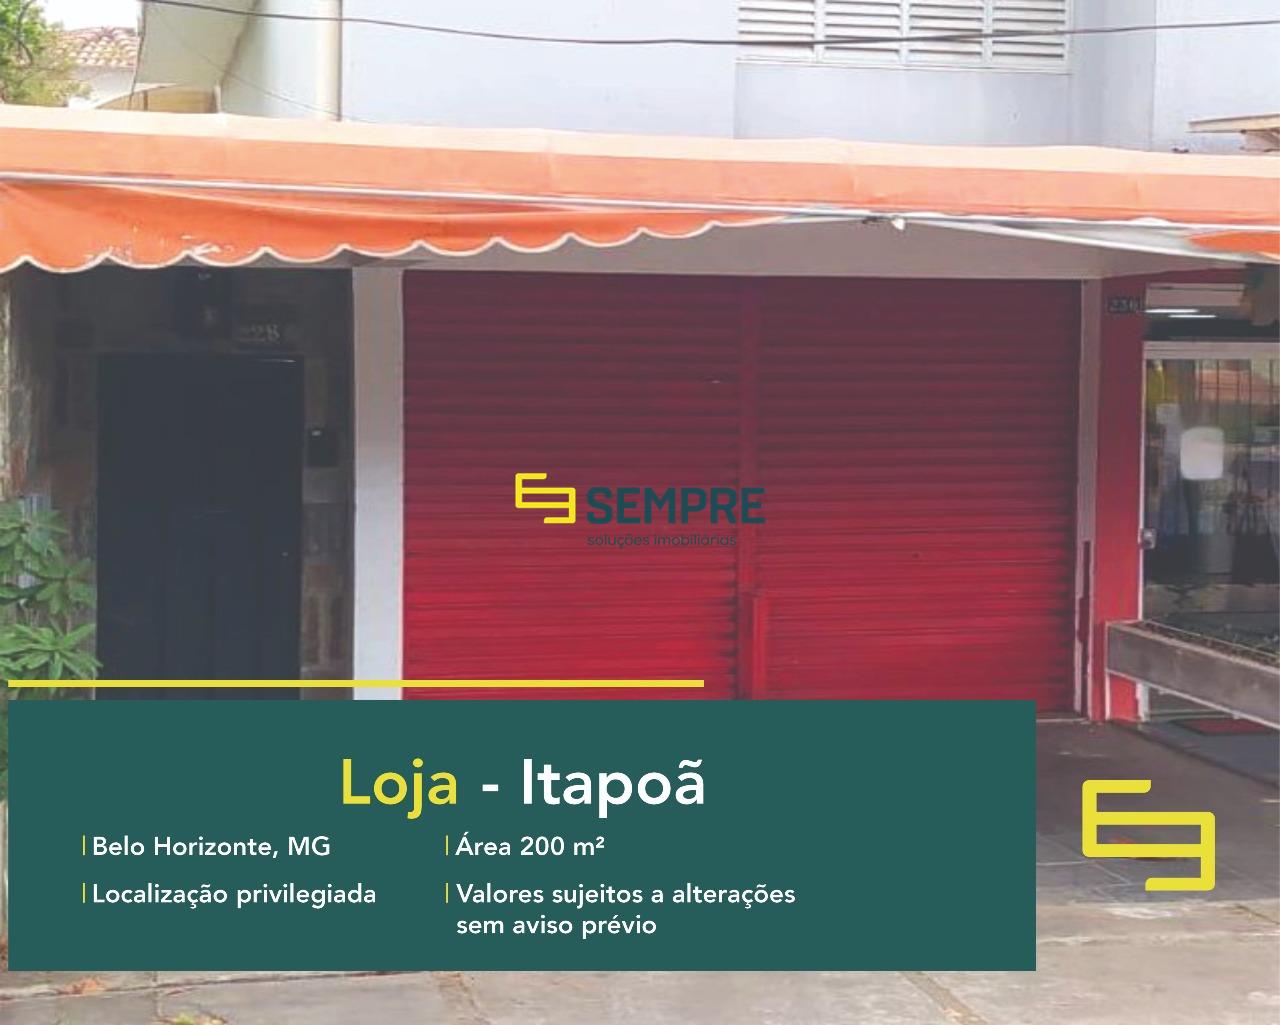 Loja à venda no Itapoã em Belo Horizonte, excelente localização. O estabelecimento comercial conta, sobretudo, com área de 200 m².